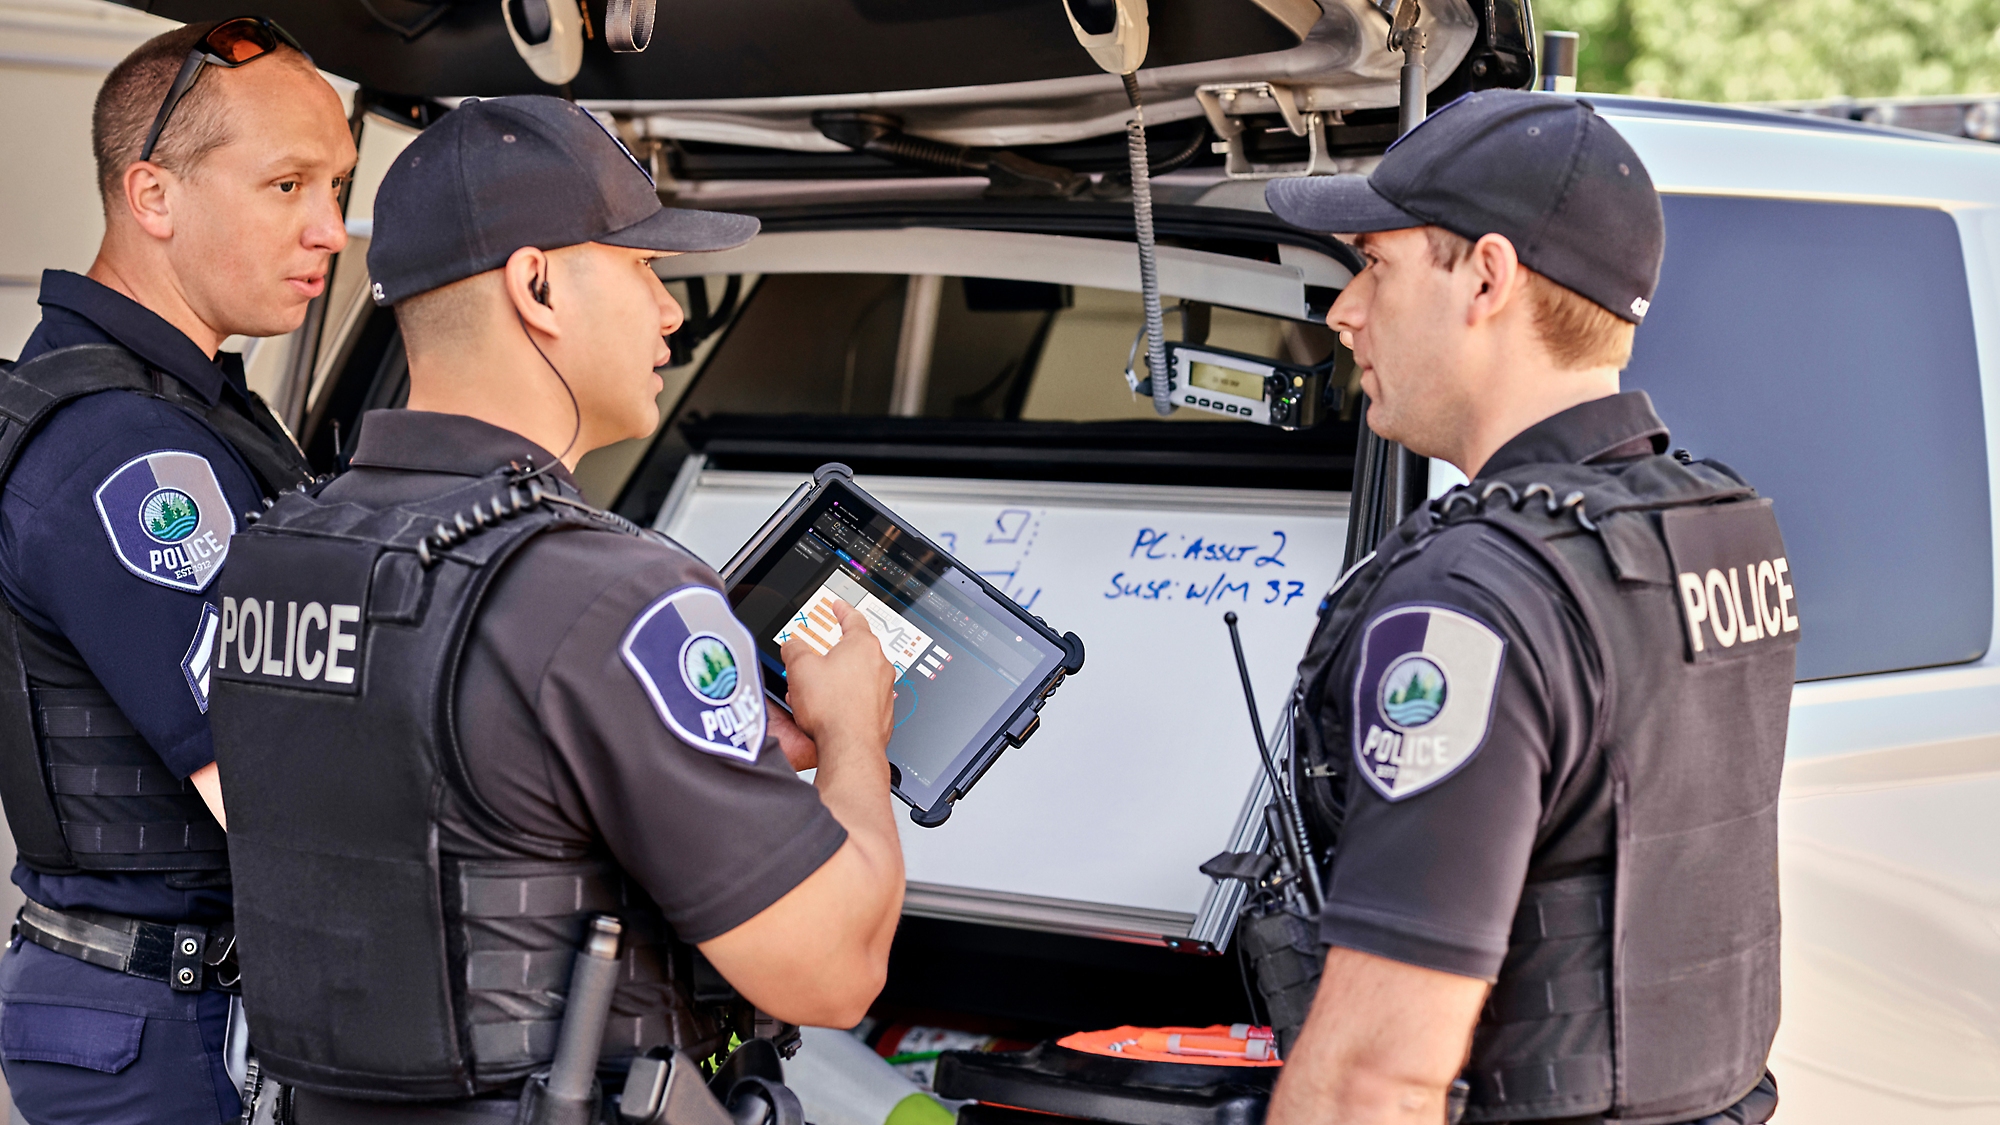 صورة لثلاثة من ضباط الشرطة يراجعون المعلومات الموجودة على جهاز لوحي رقمي بجانب سيارة الدورية الخاصة بهم مع فتح صندوق السيارة